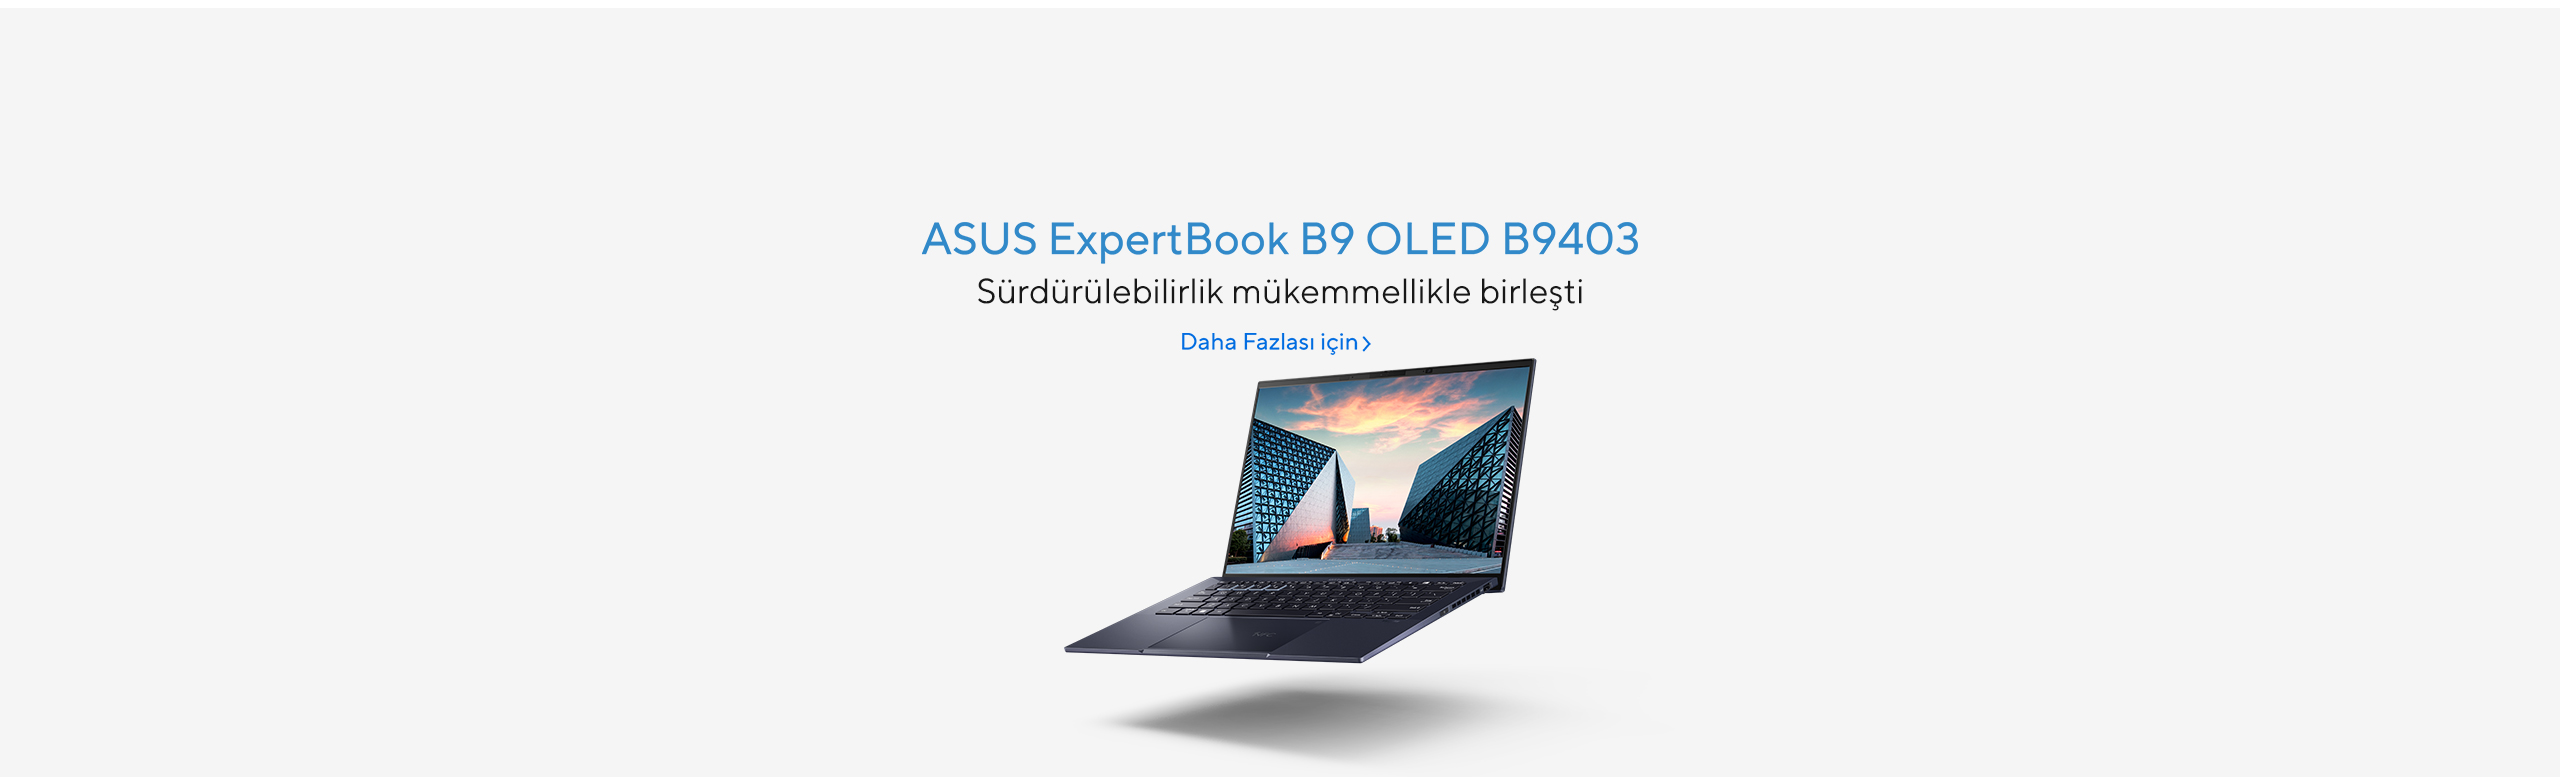 Sürdürülebilirlik mükemmellikle birleşti - ASUS ExpertBook B9 OLED B9403